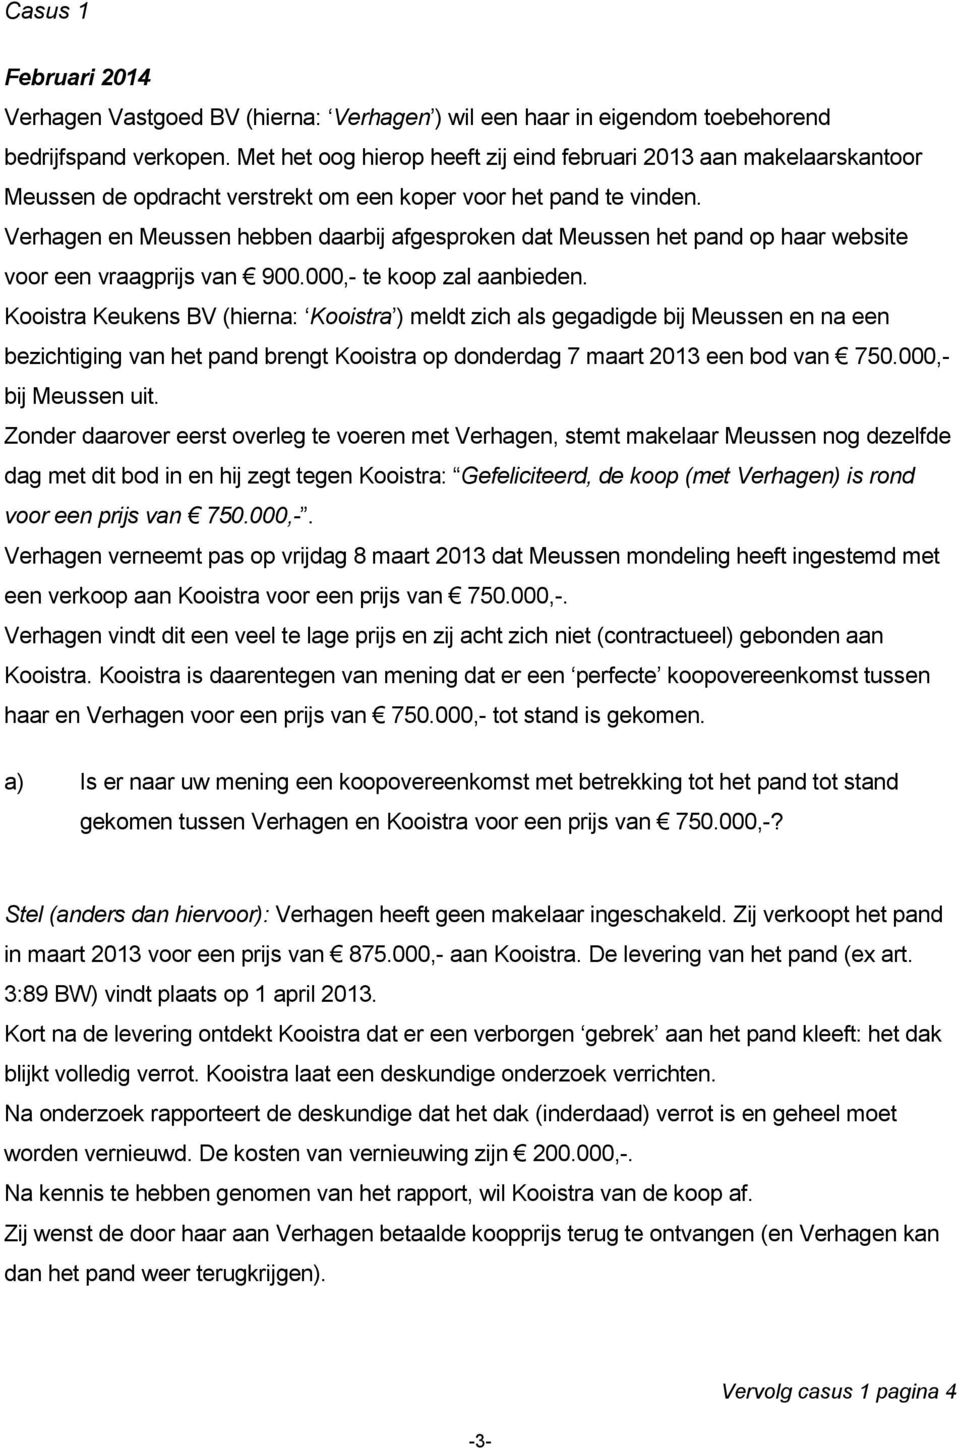 Verhagen en Meussen hebben daarbij afgesproken dat Meussen het pand op haar website voor een vraagprijs van 900.000,- te koop zal aanbieden.